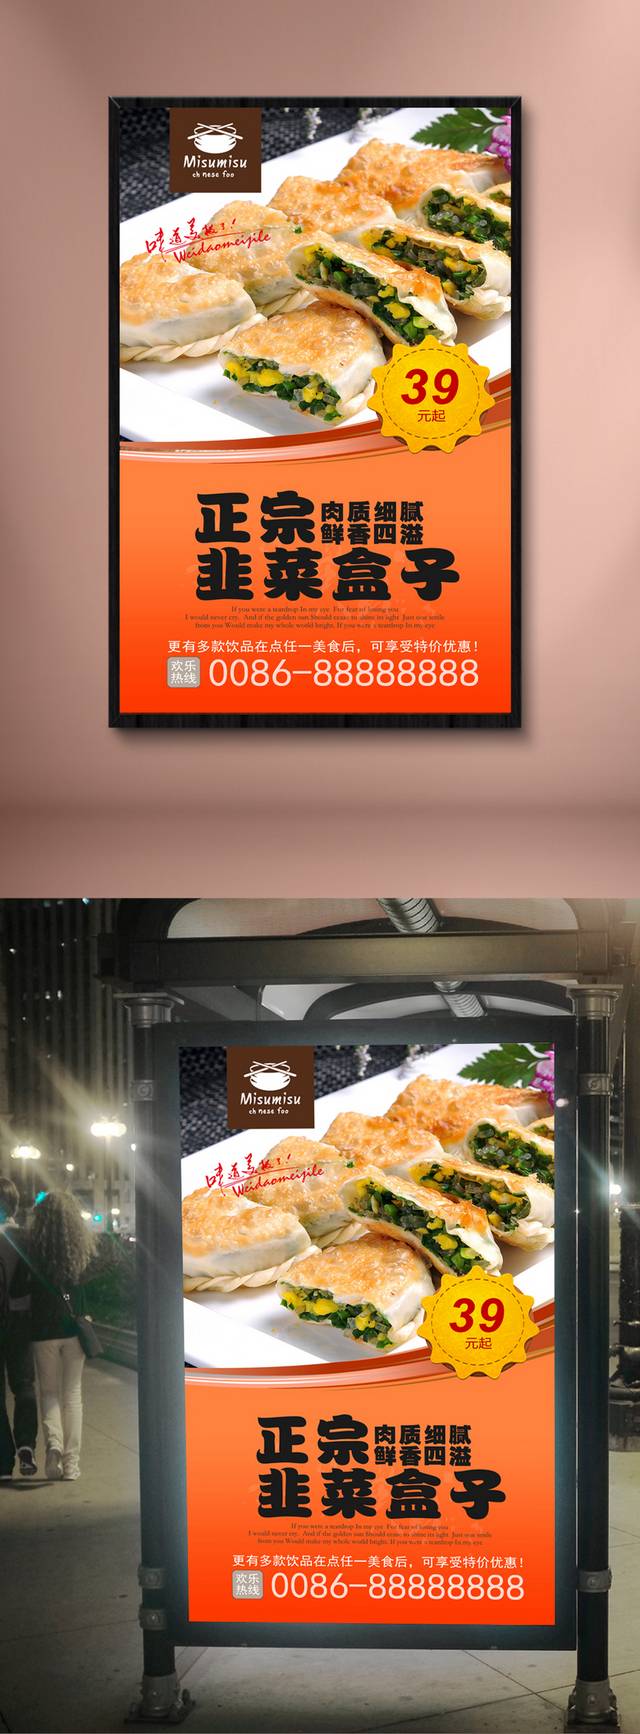 韭菜盒子宣传海报设计